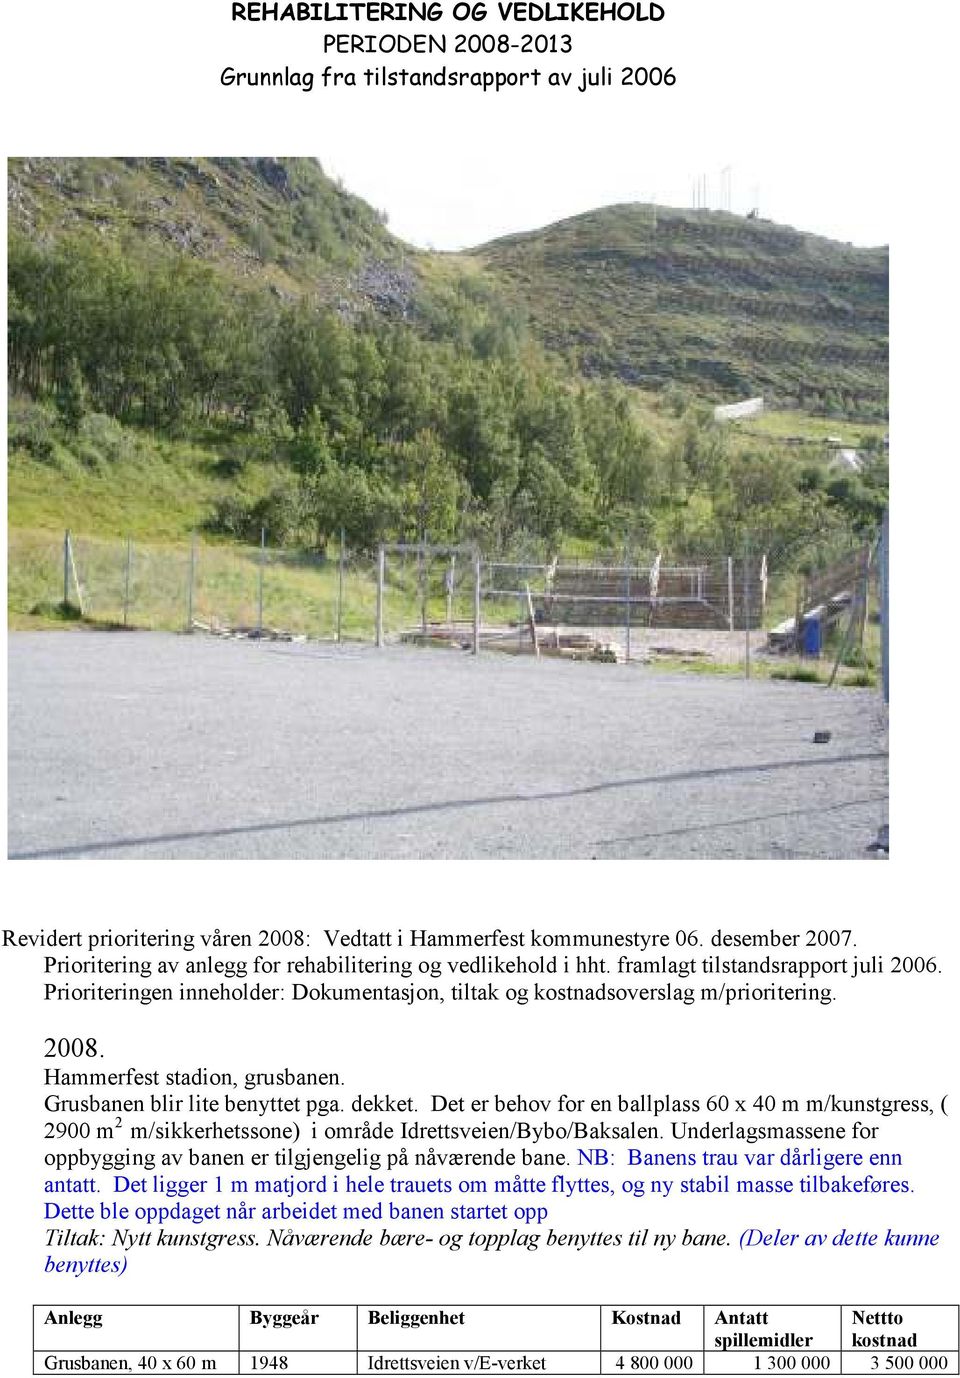 Hammerfest stadion, grusbanen. Grusbanen blir lite benyttet pga. dekket. Det er behov for en ballplass 60 x 40 m m/kunstgress, ( 2900 m 2 m/sikkerhetssone) i område Idrettsveien/Bybo/Baksalen.